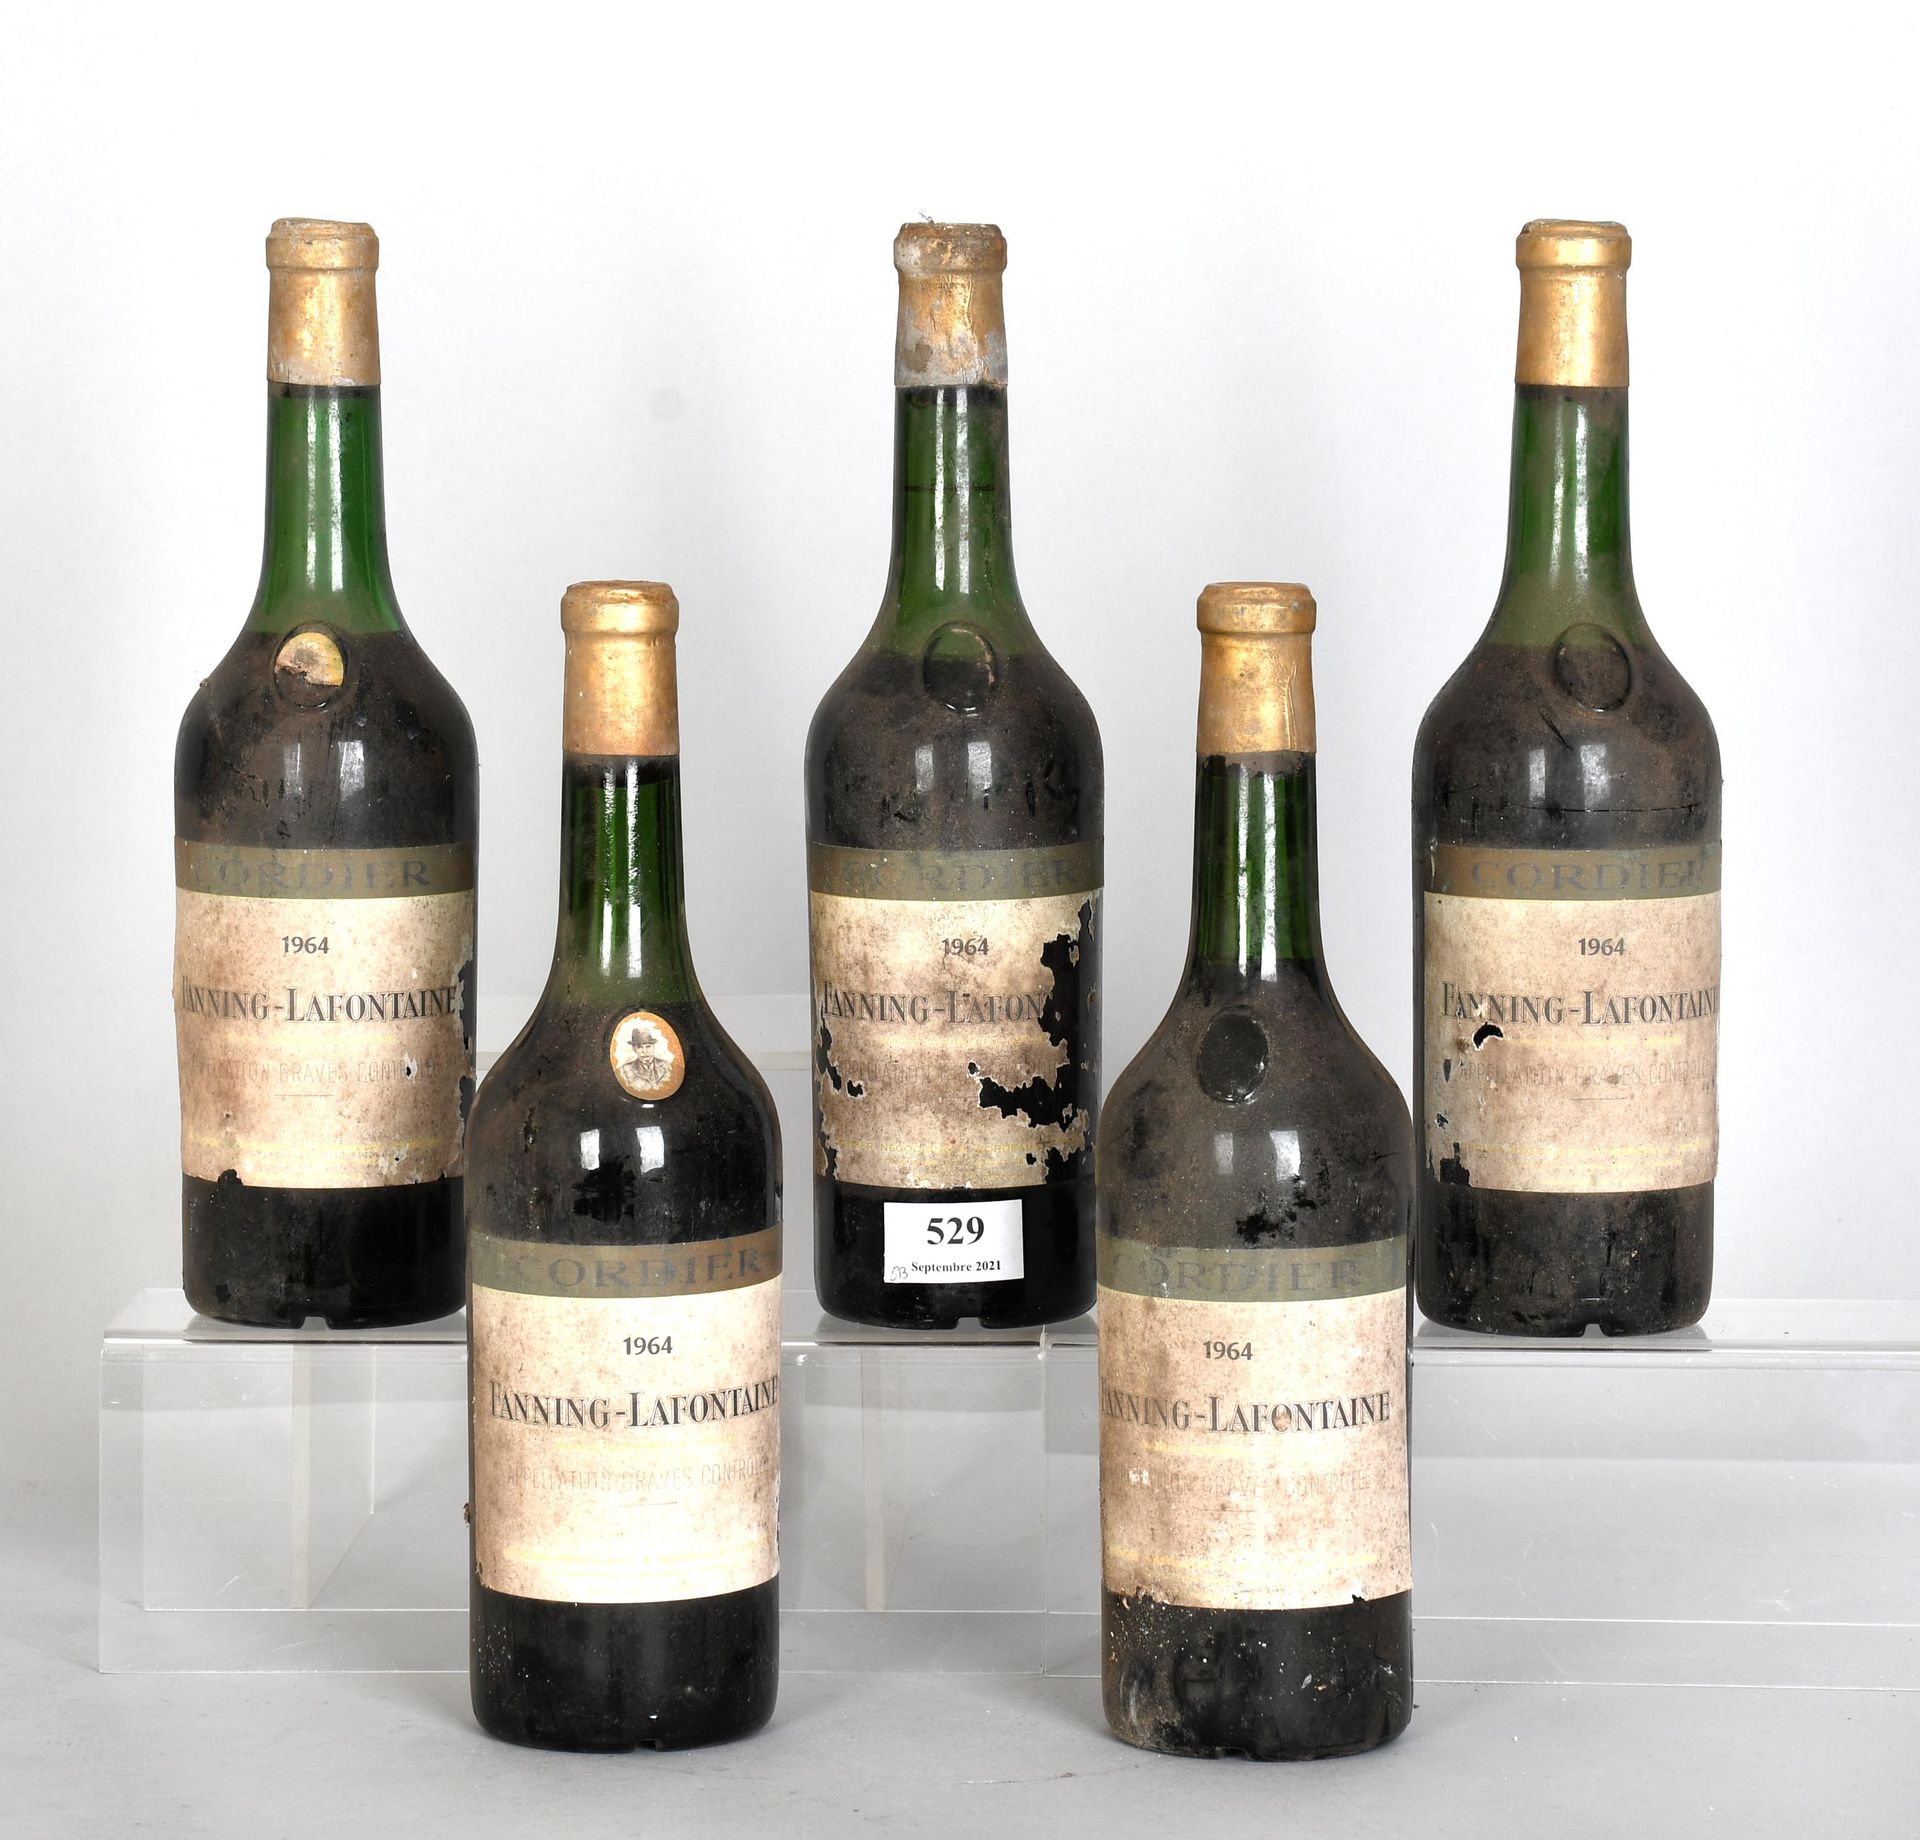 Null Fanning-Lafontaine 1964 - Fünf Flaschen Wein

Gräber. Das Niveau sinkt. Ein&hellip;